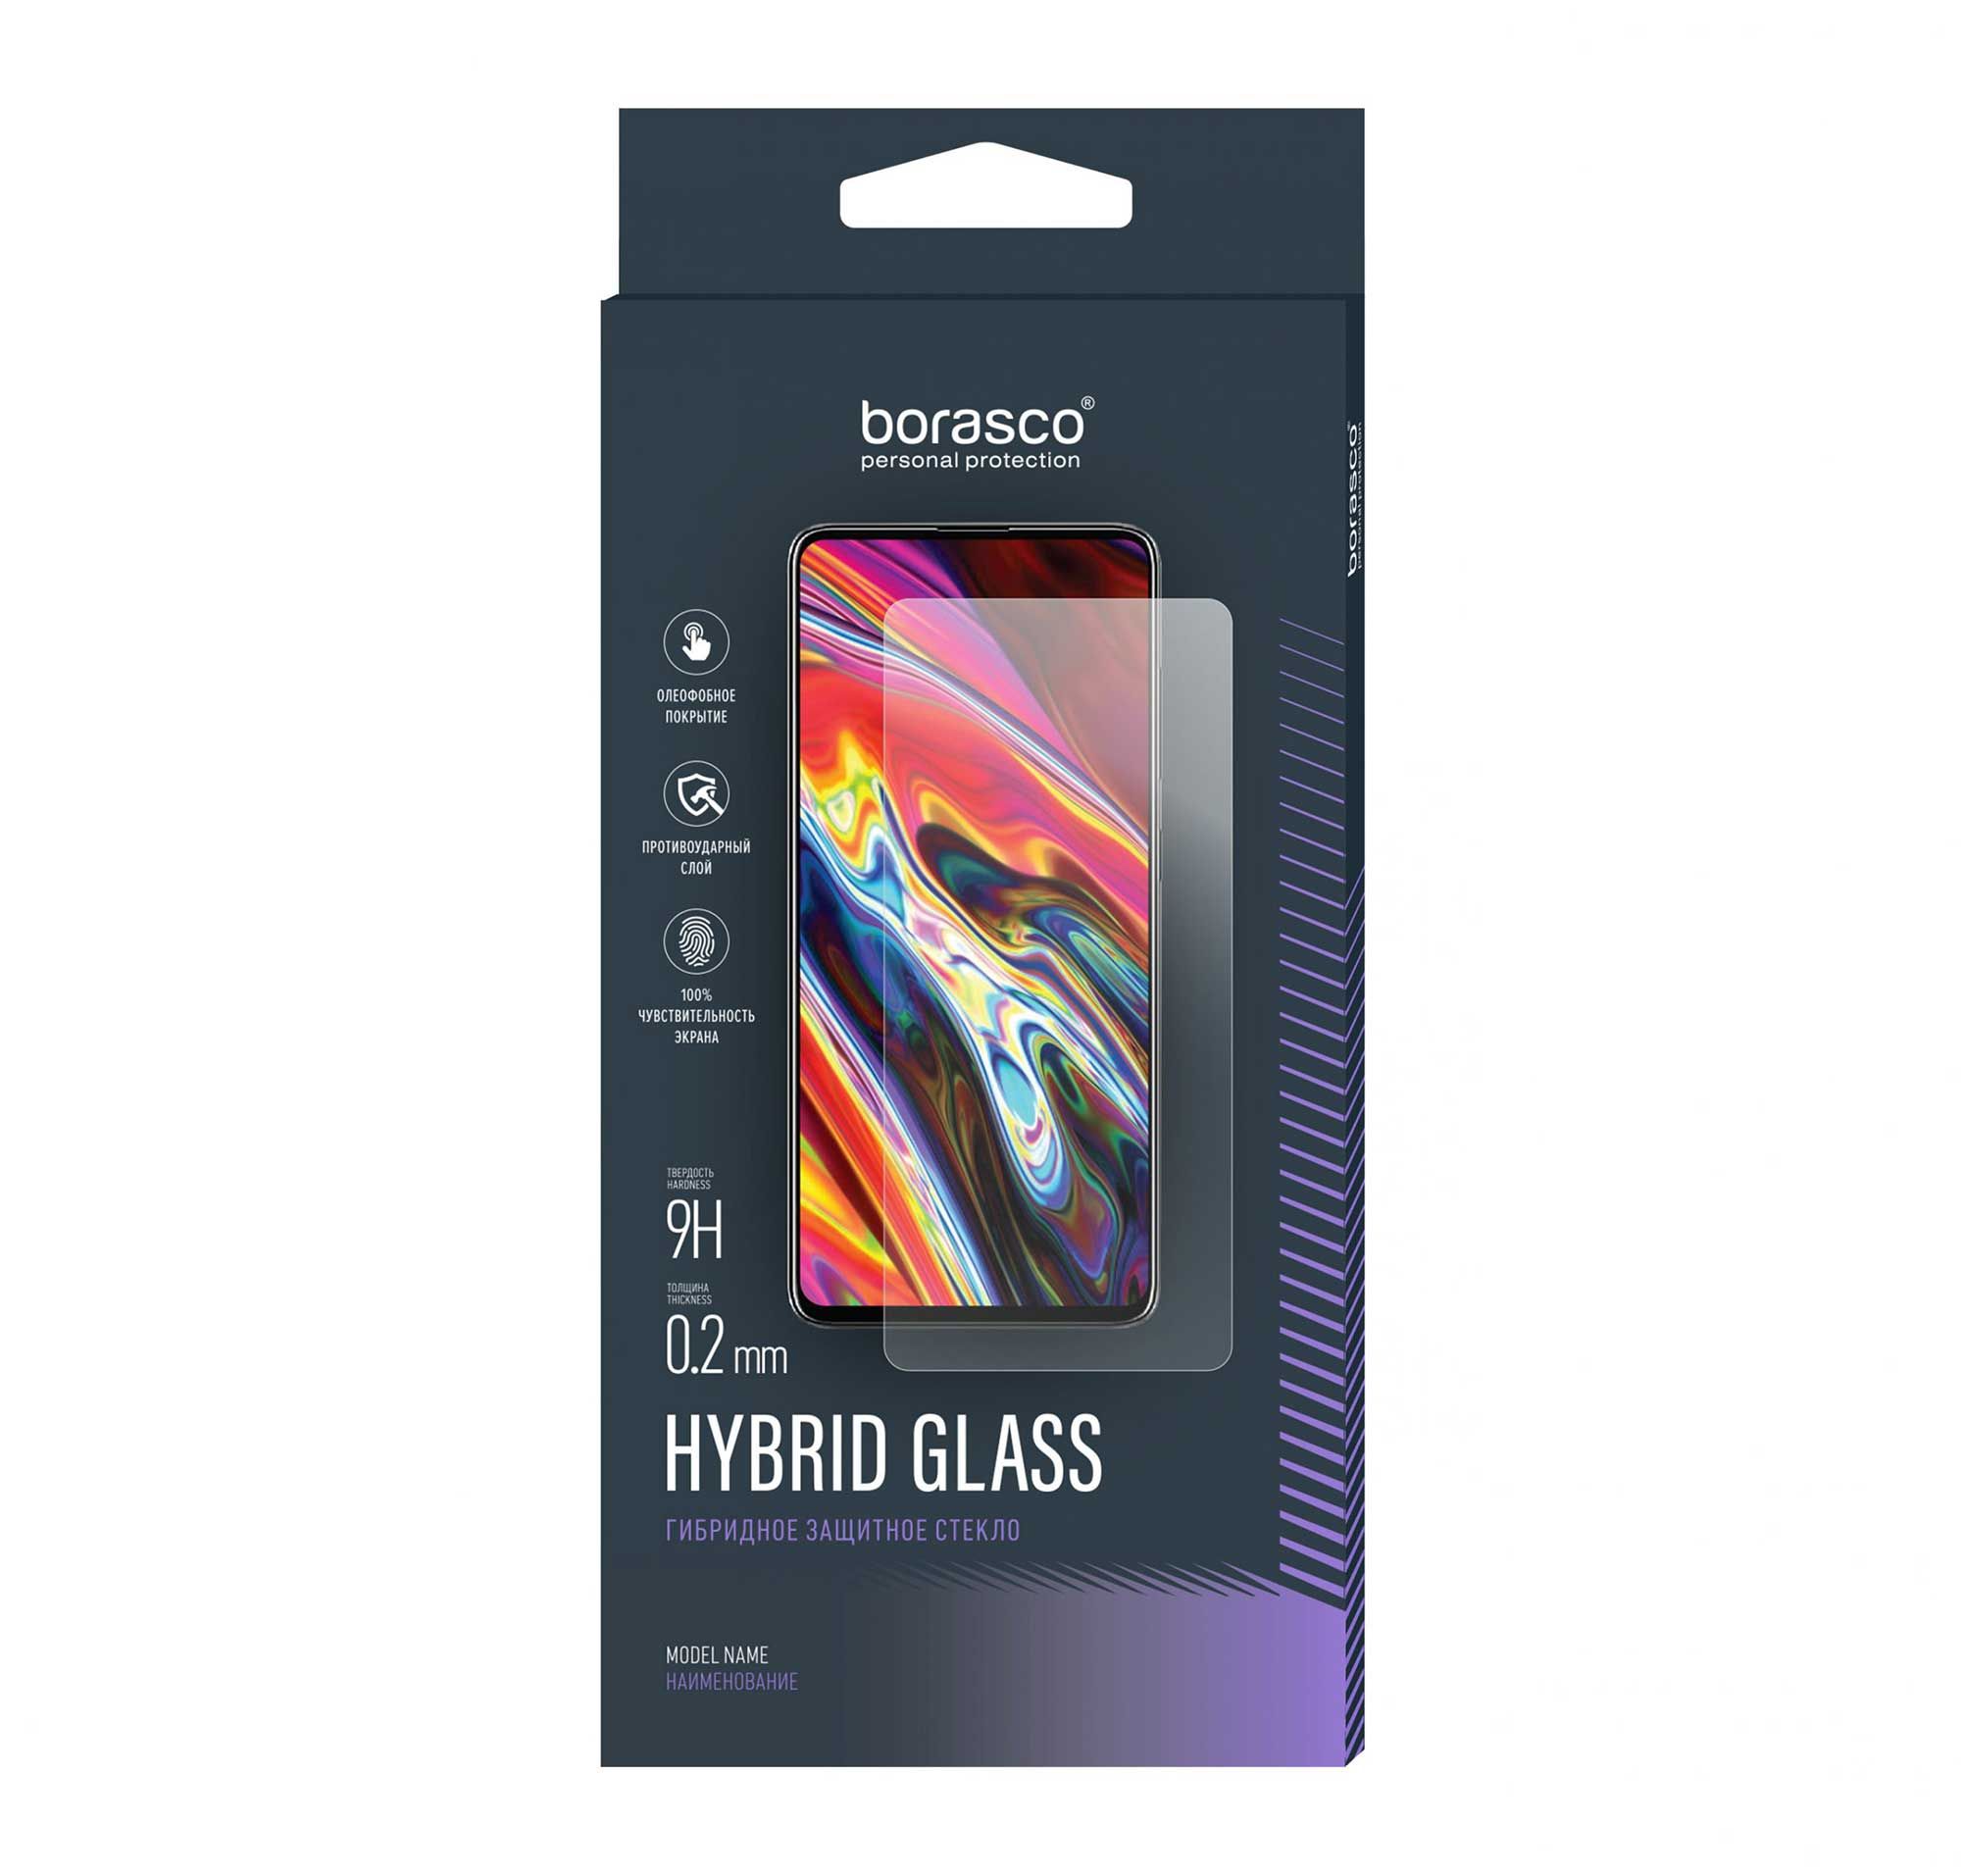 Защитное стекло Hybrid Glass для Sony Xperia 1 III цена и фото